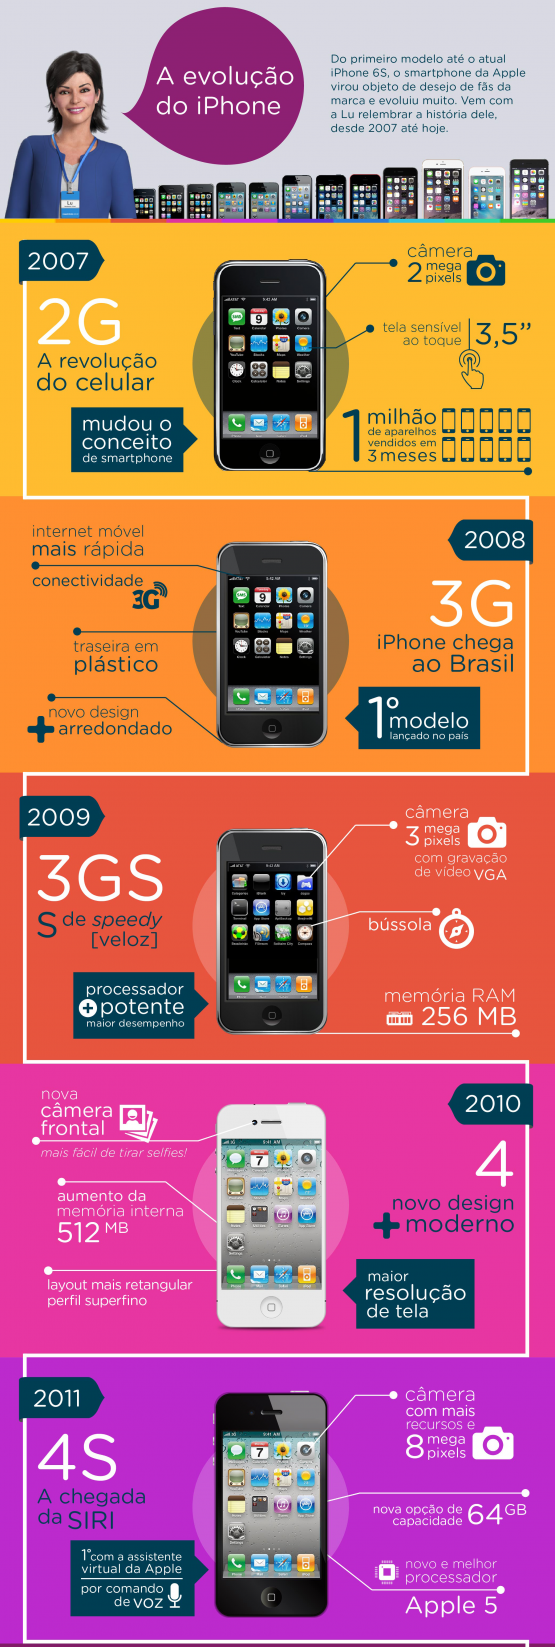 Infográfico-evolução-iphone-ALTERADO4-01-01